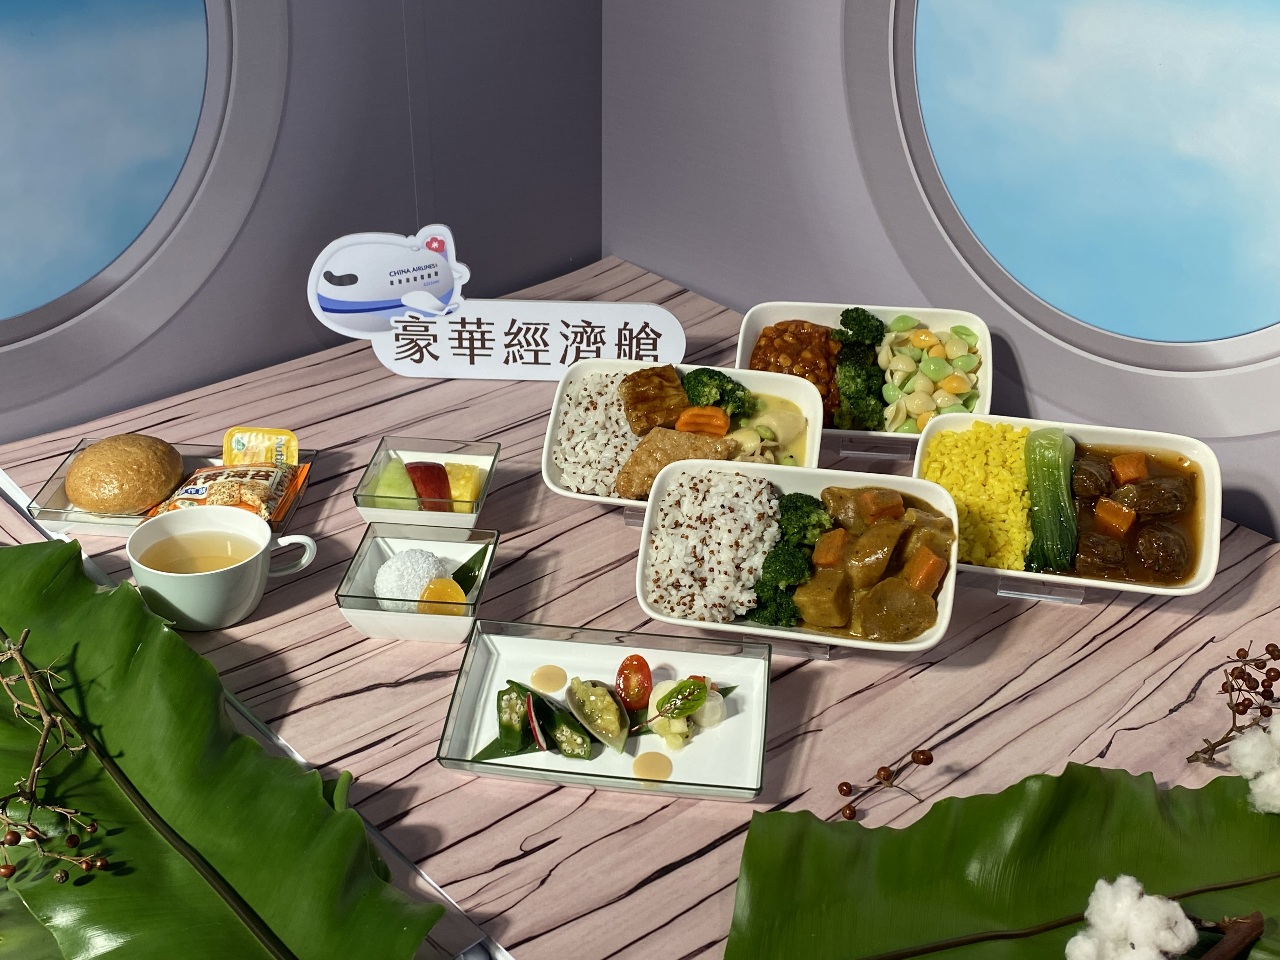 台灣米其林綠星美食躍上雲端 華航疫後推蔬食機上餐